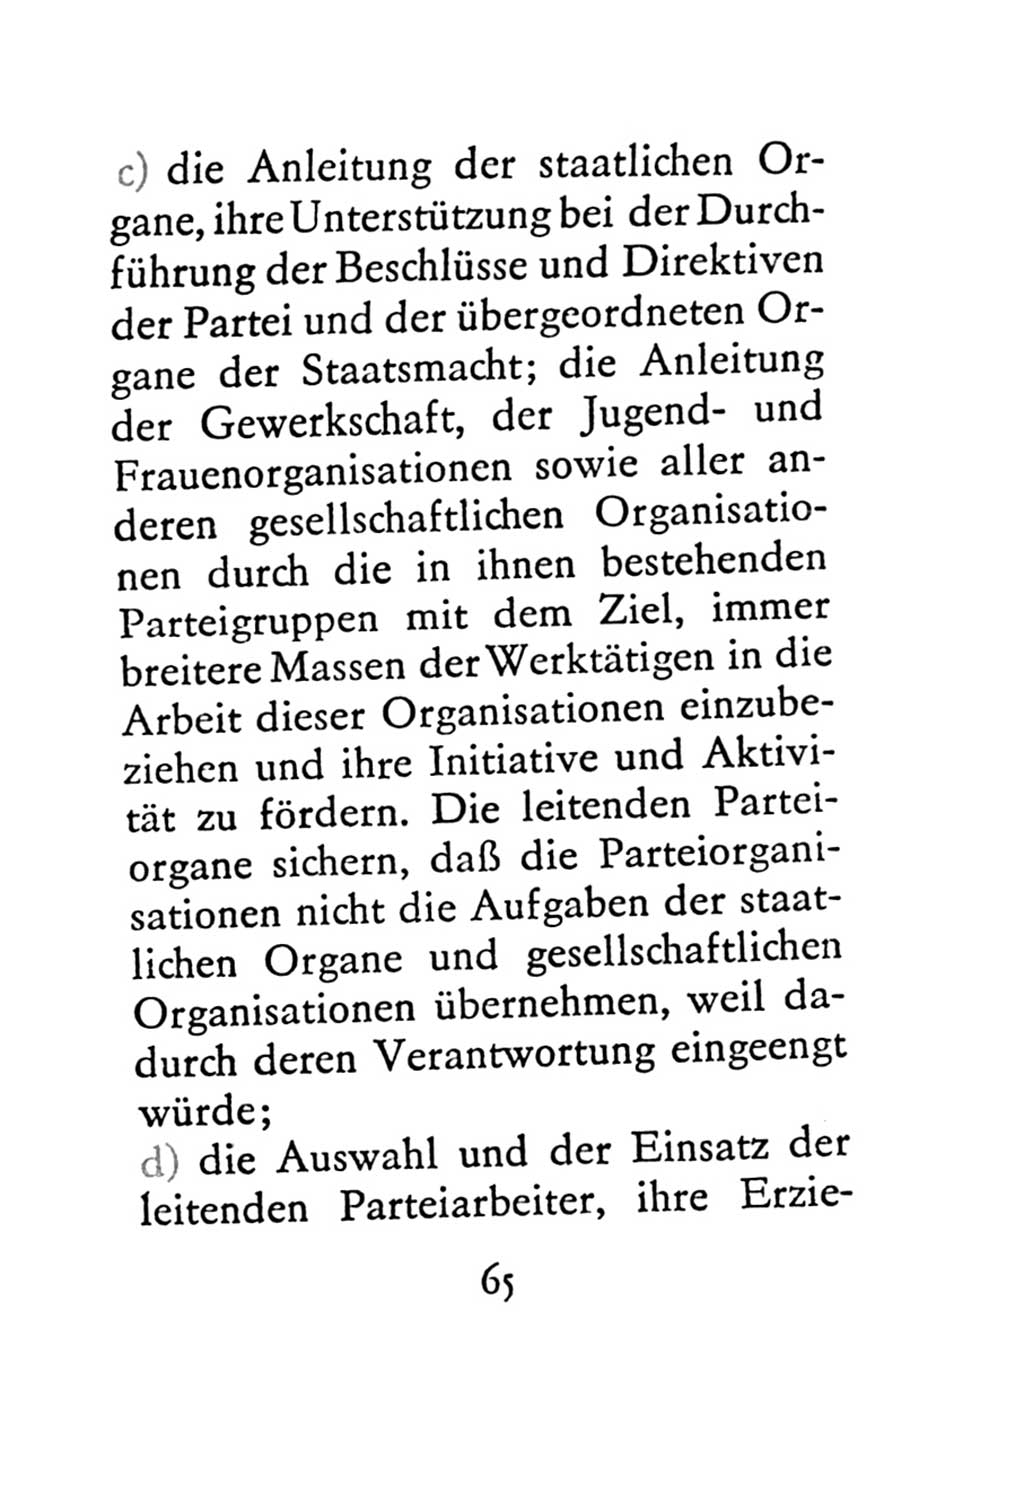 Statut der Sozialistischen Einheitspartei Deutschlands (SED) 1971, Seite 65 (St. SED DDR 1971, S. 65)